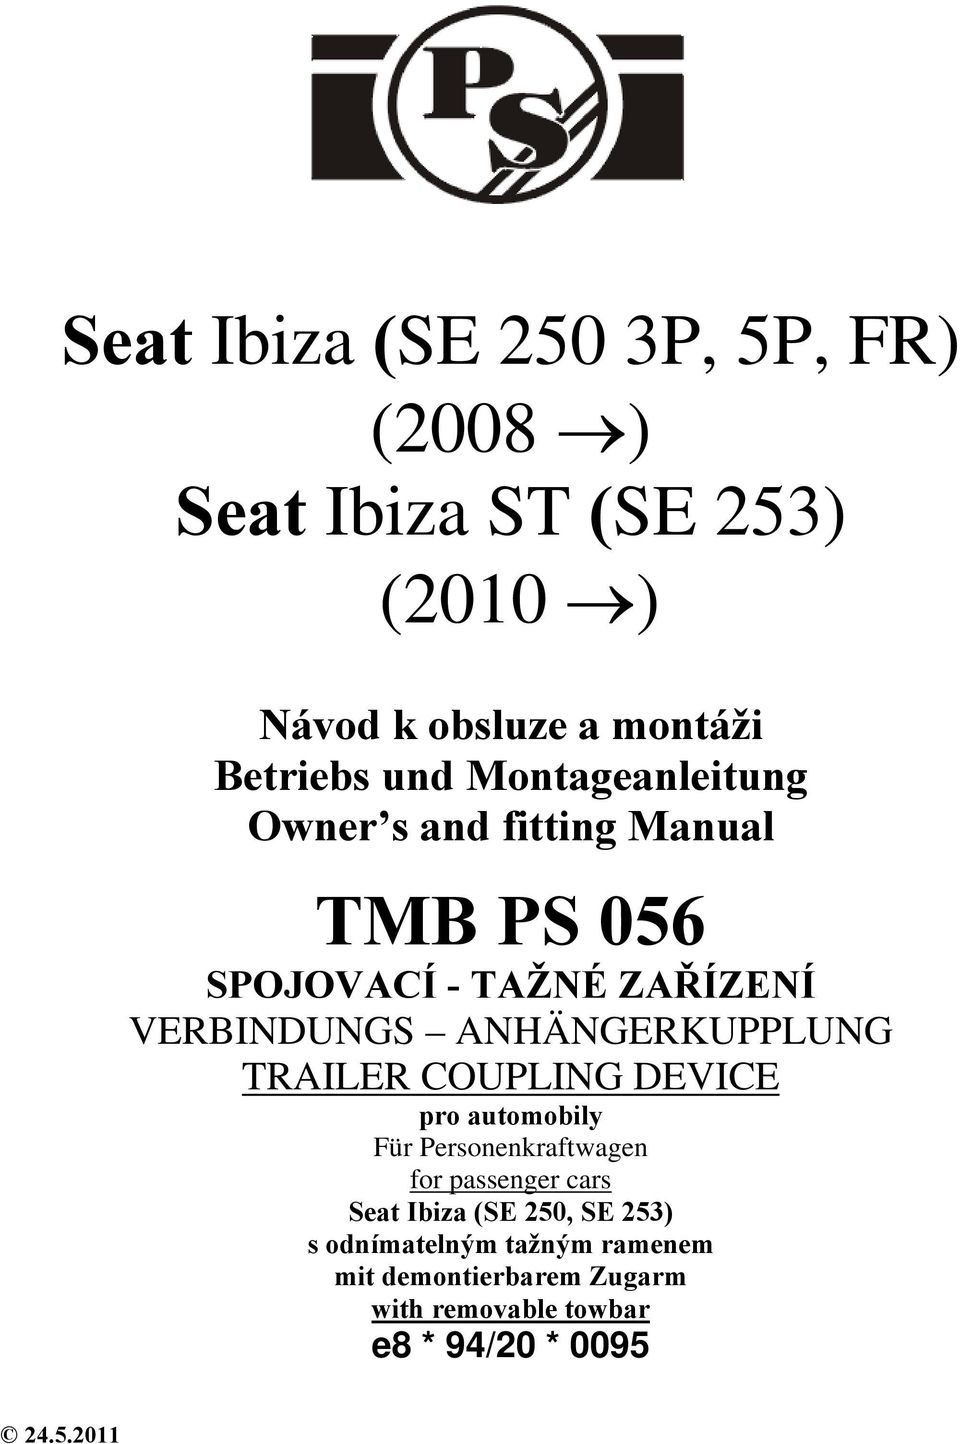 ANHÄNGERKUPPLUNG TRAILER COUPLING DEVICE pro automobily Für Personenkraftwagen for passenger cars Seat Ibiza